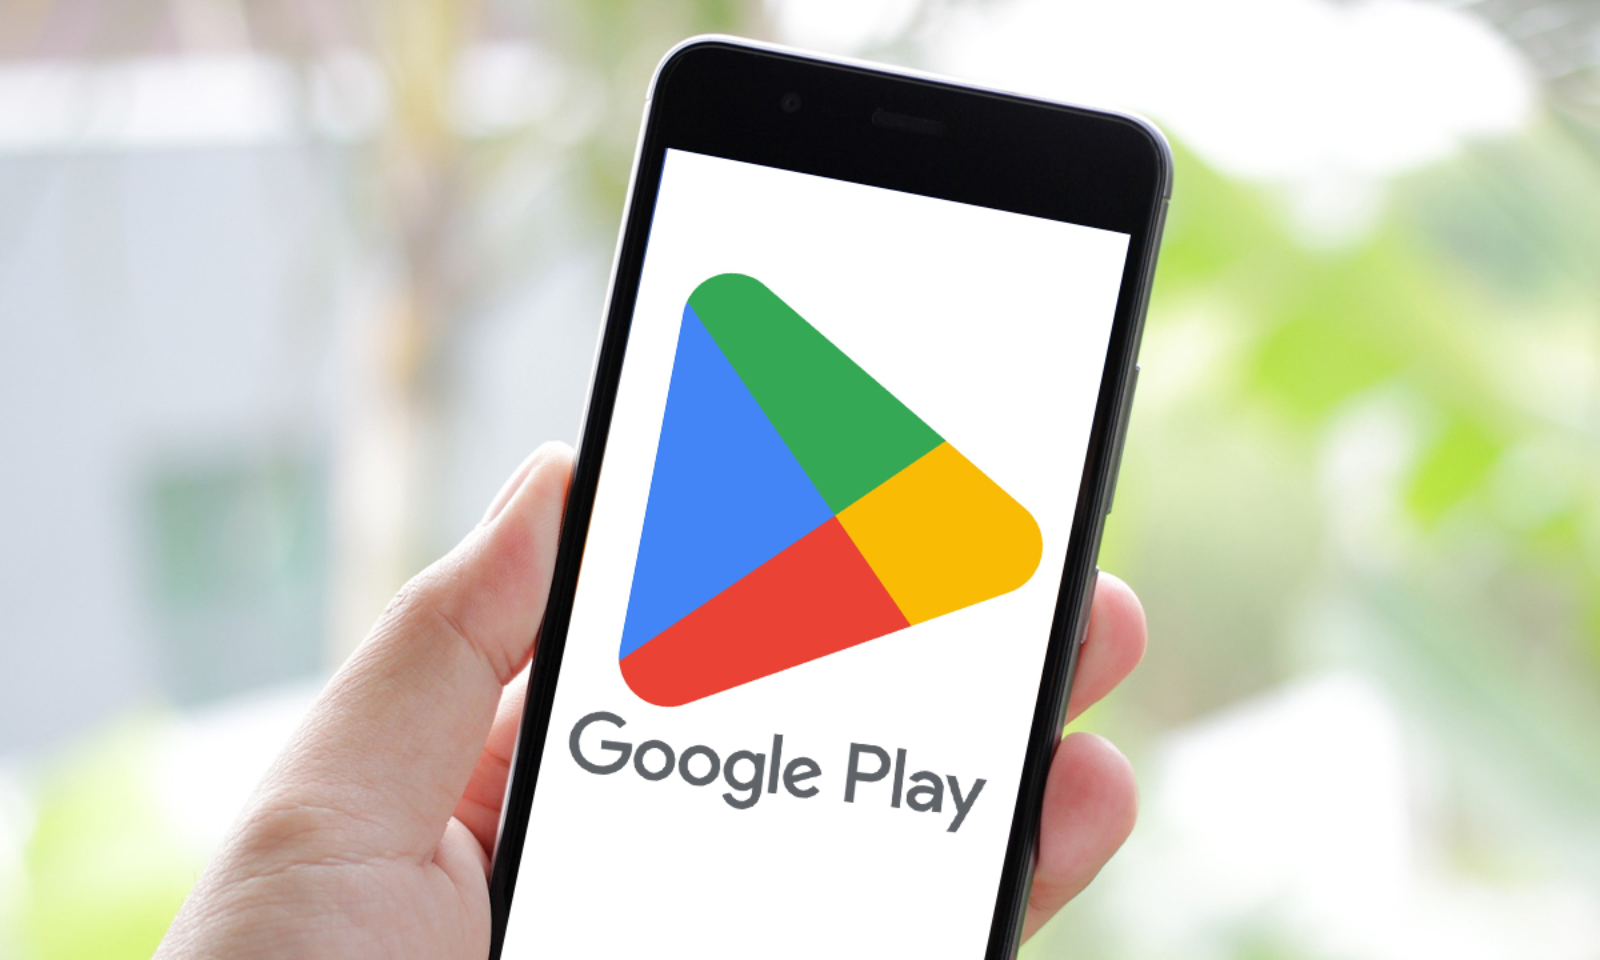 У Google Play з'явилася нова вкладка "Пошук" на нижній панелі